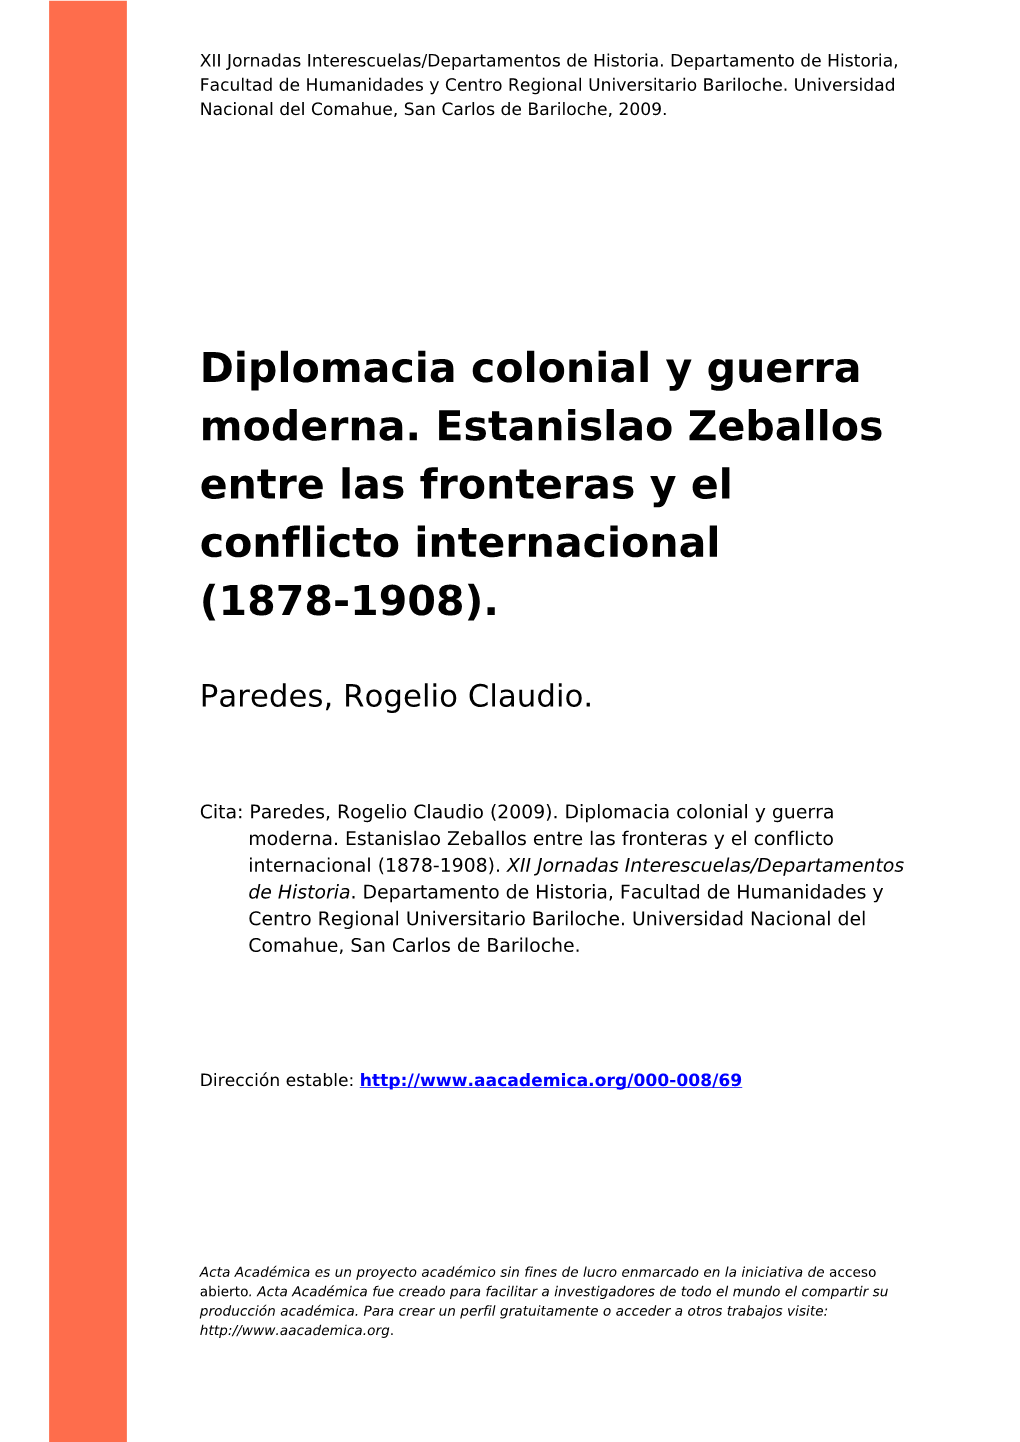 Diplomacia Colonial Y Guerra Moderna. Estanislao Zeballos Entre Las Fronteras Y El Conflicto Internacional (1878-1908)